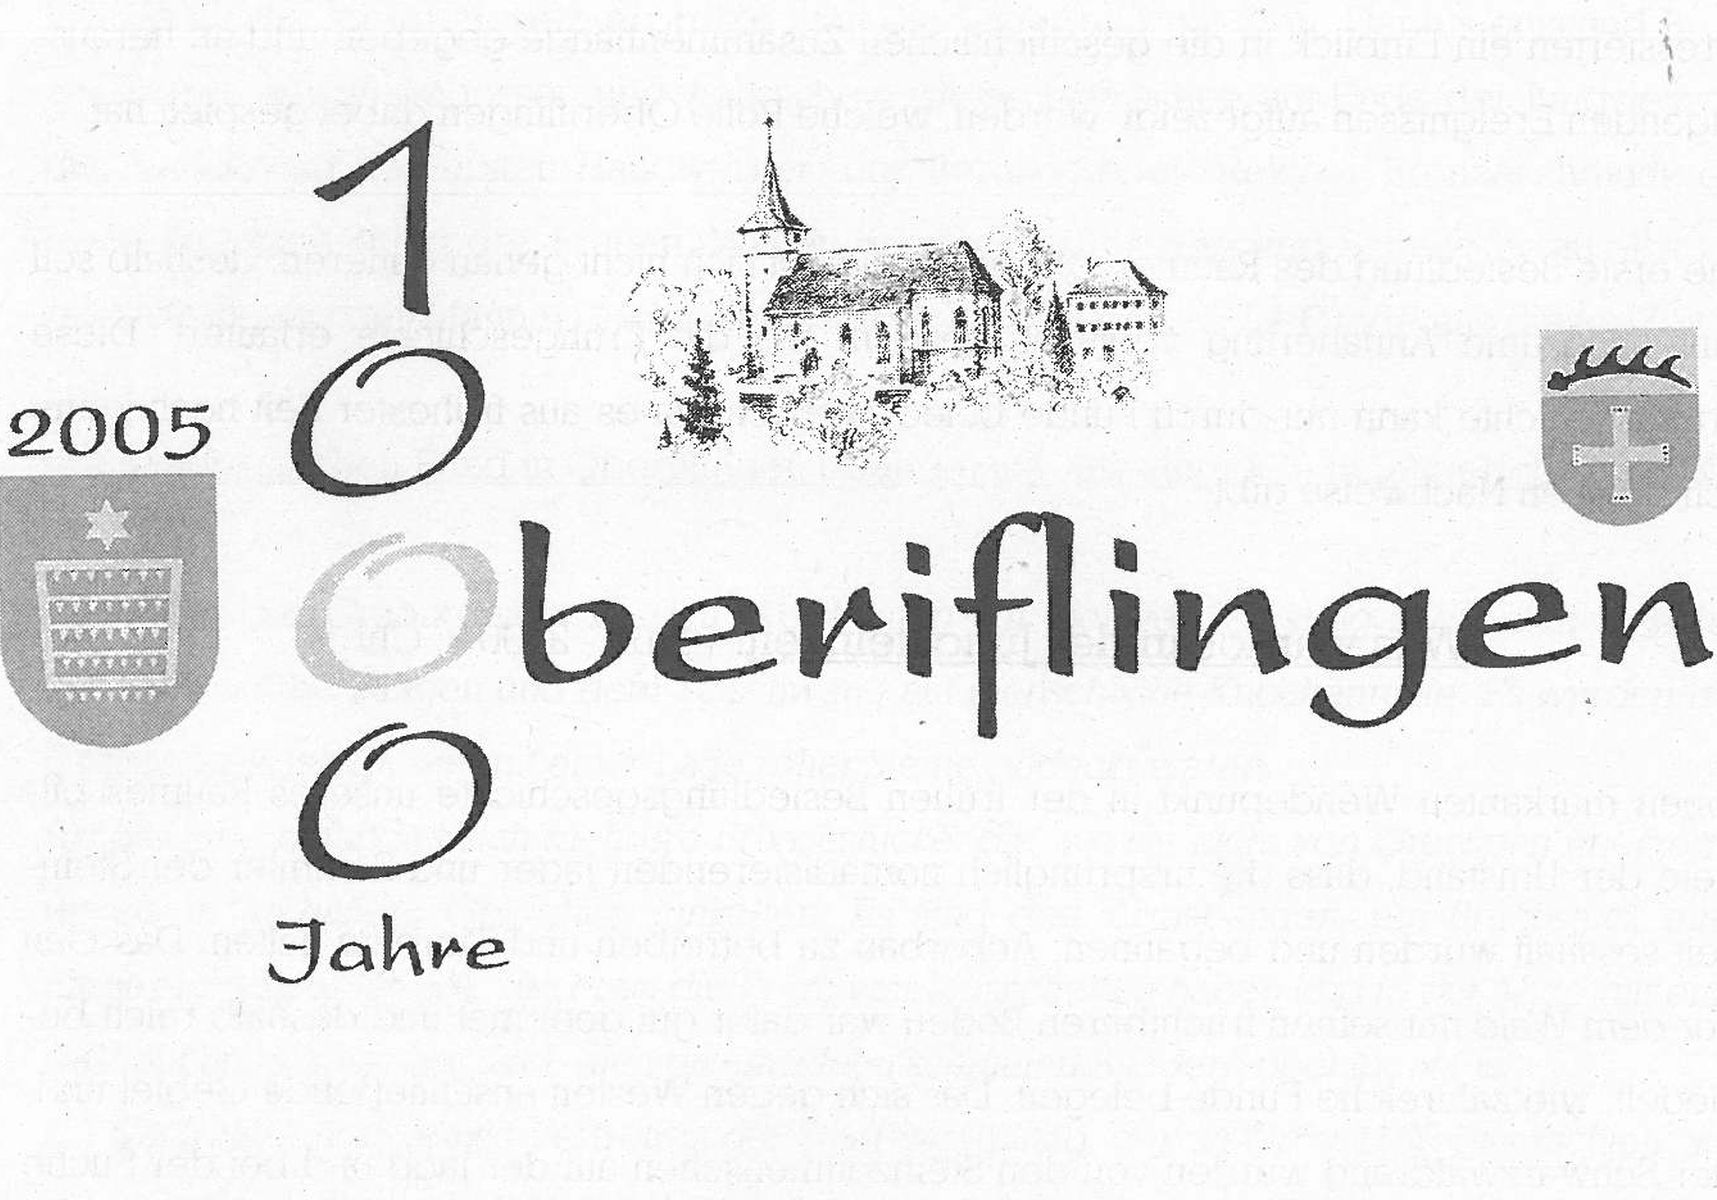  Logo 1000 Jahre Oberiflingen - Bild wird mit einem klick vergrößert 